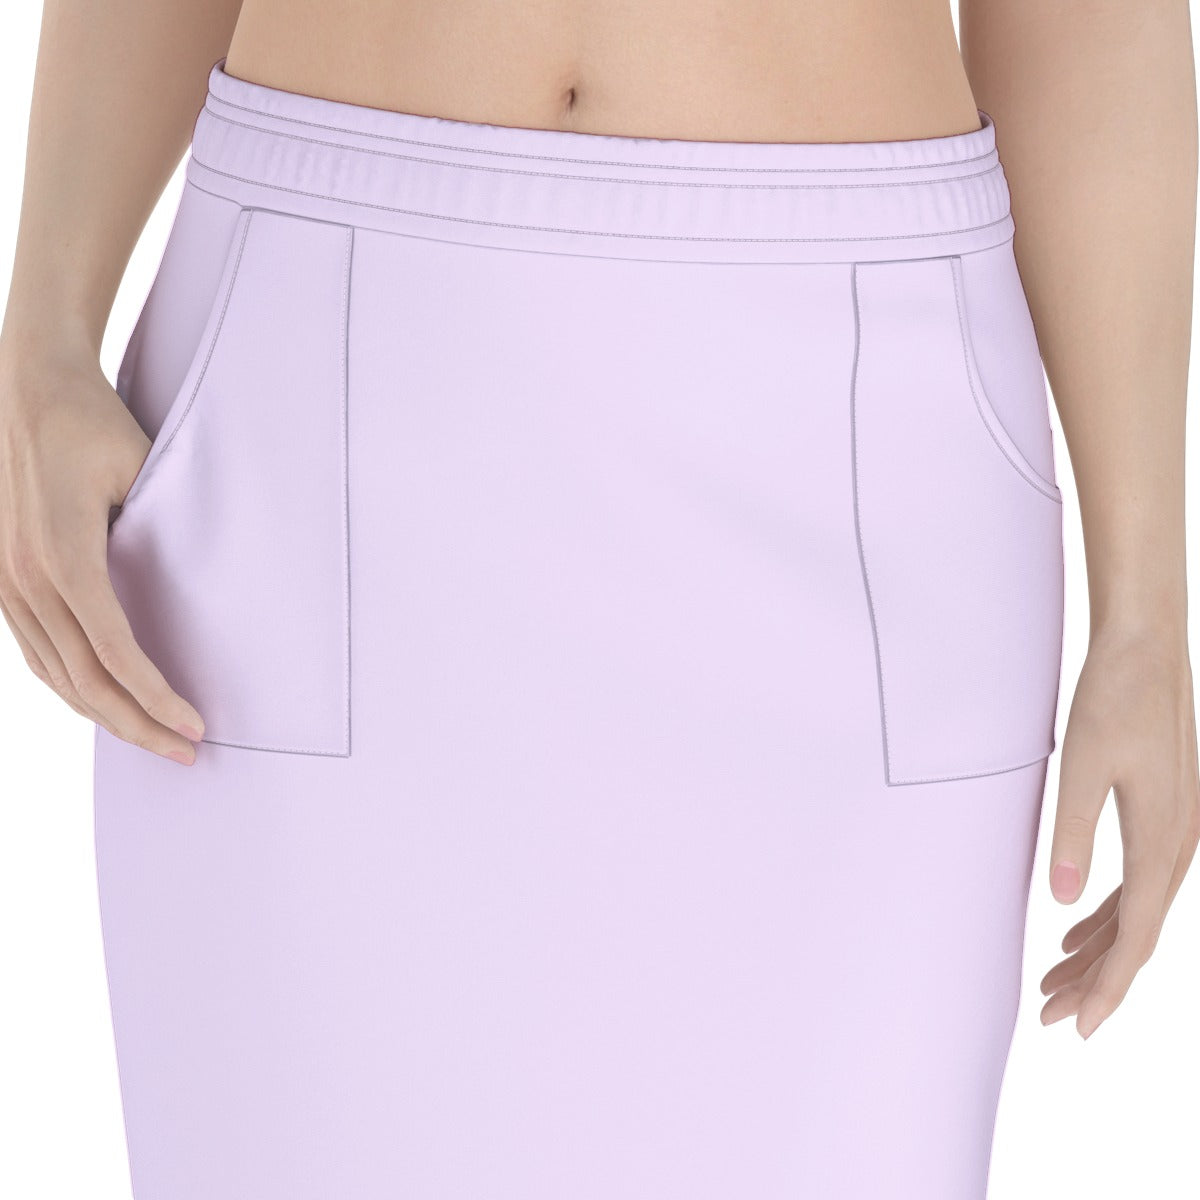 All-Over Print Women's Long Hip Skirt